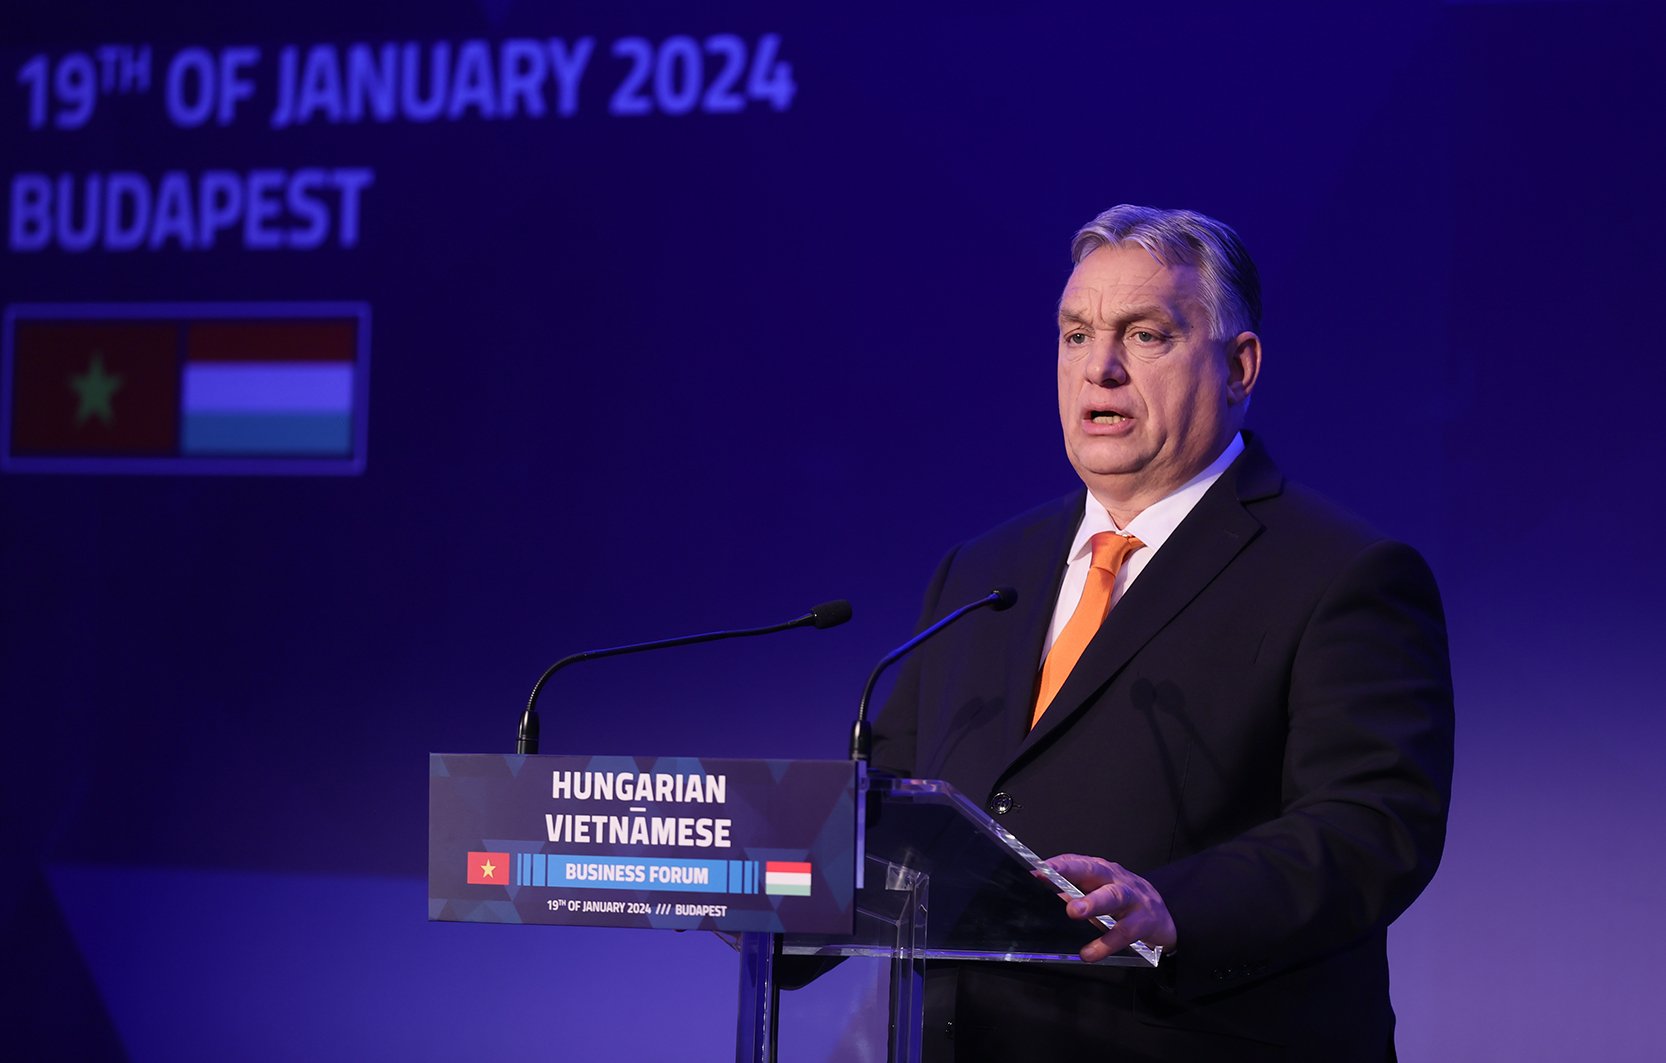 Thủ tướng Viktor Orban đề nghị phía Việt Nam thúc đẩy các doanh nghiệp mạnh sang đầu tư tại Hungary. Ảnh: VGP